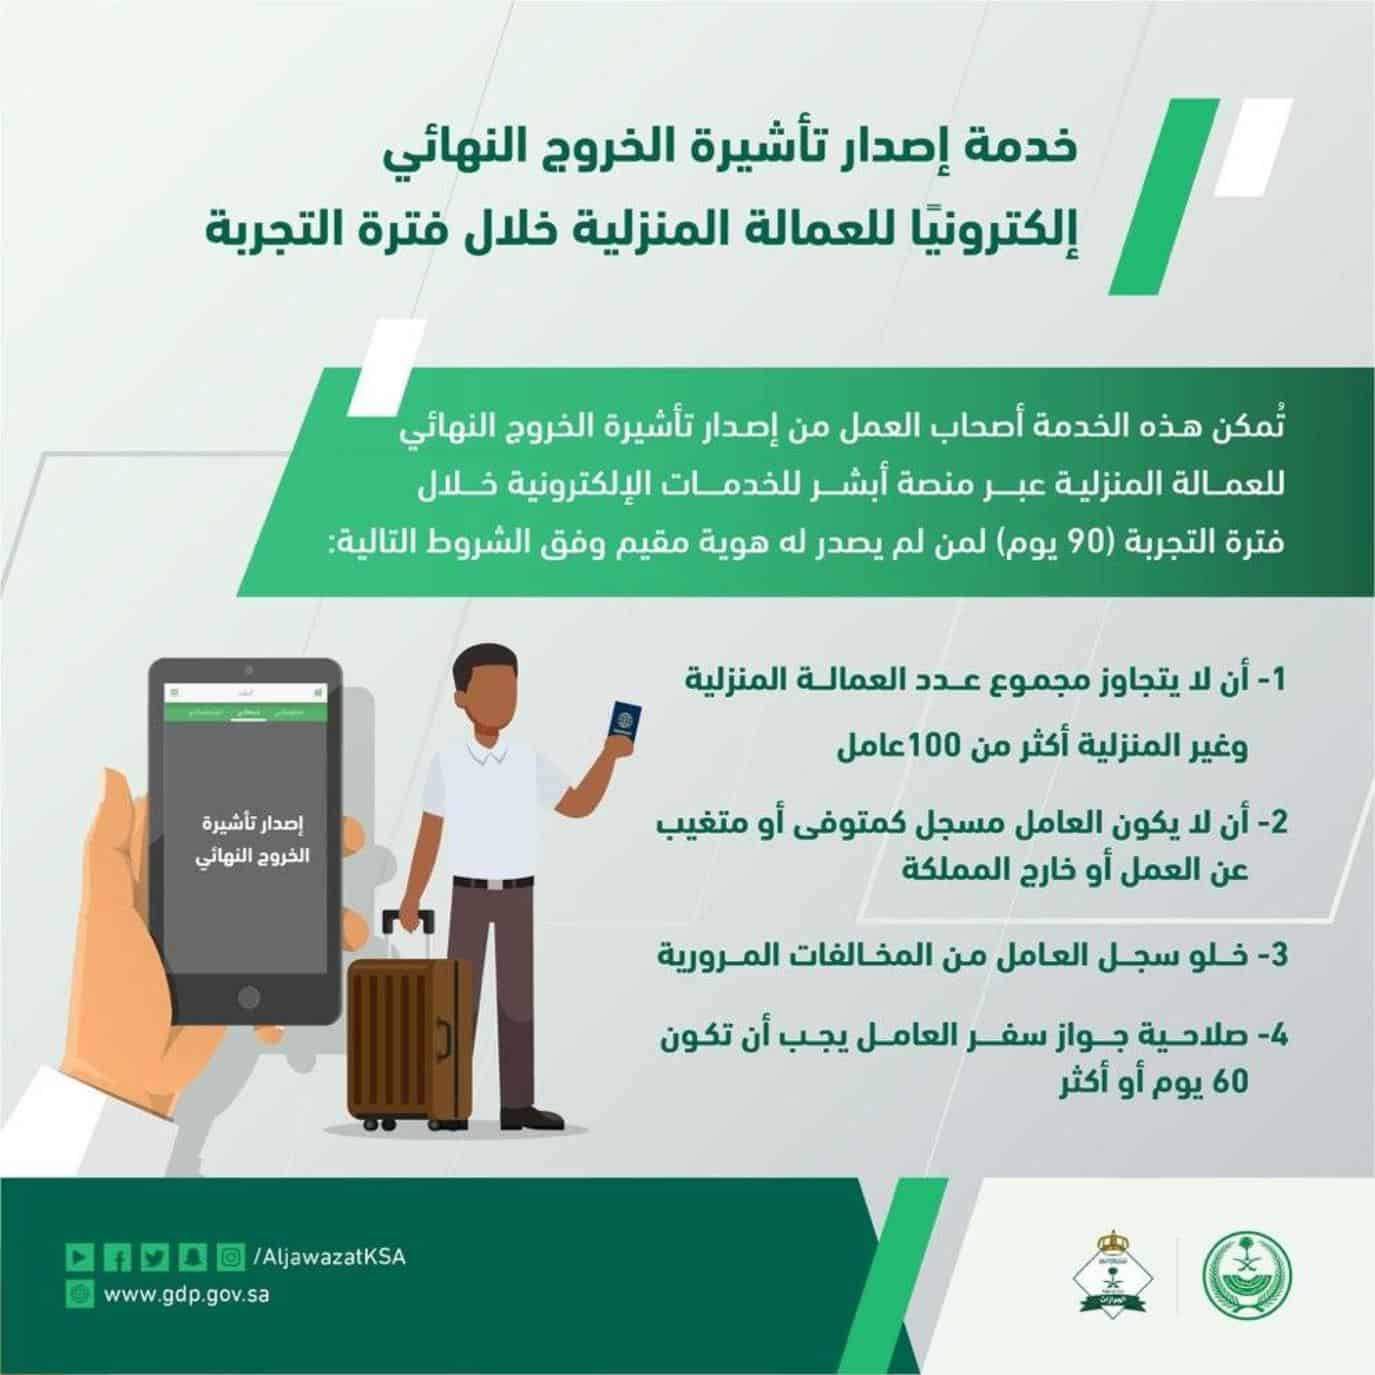 «الجوازات» توضح شروط إصدار تأشيرة الخروج النهائي للعمالة المنزلية في فترة التجربة 